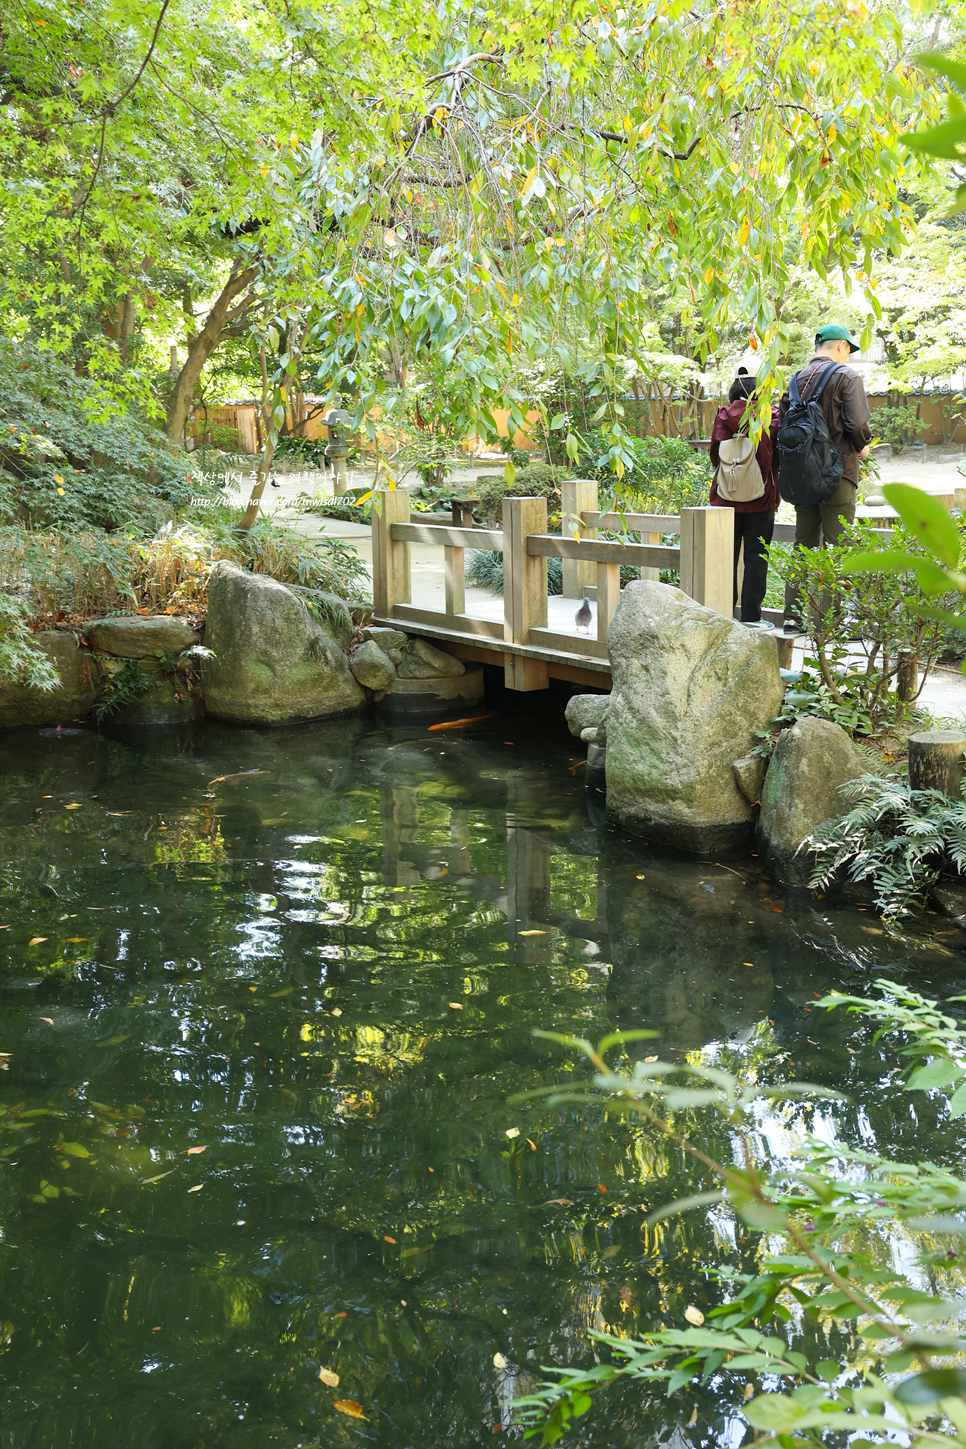 일본 후쿠오카 자유여행 볼거리 라쿠스이엔 일본식 정원